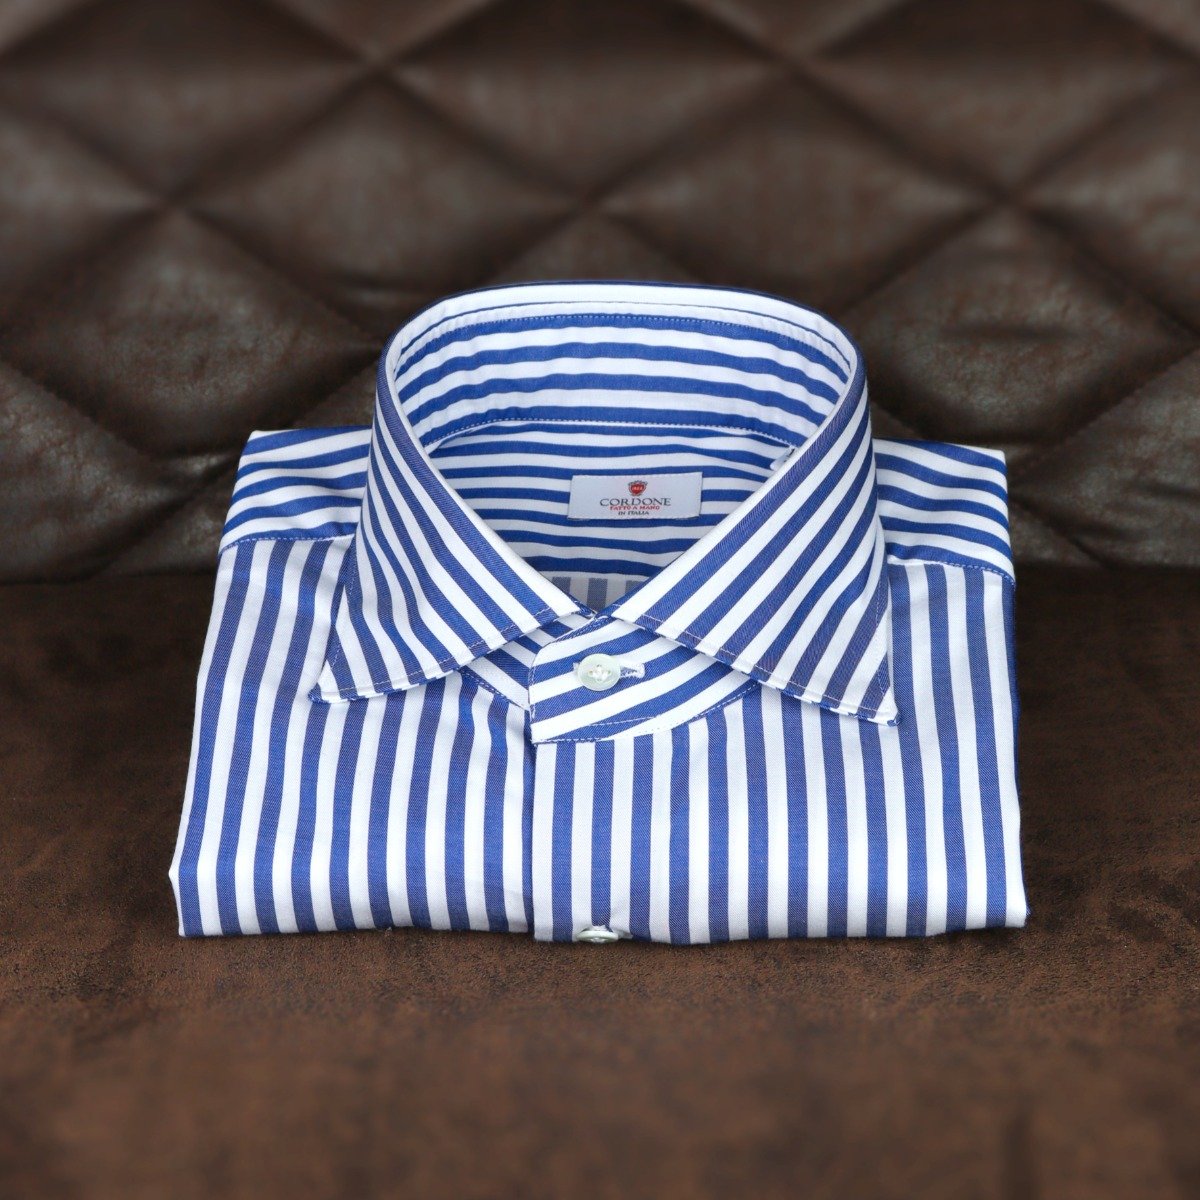 Top 5 men's dress shirts - Blue striped dress shirt